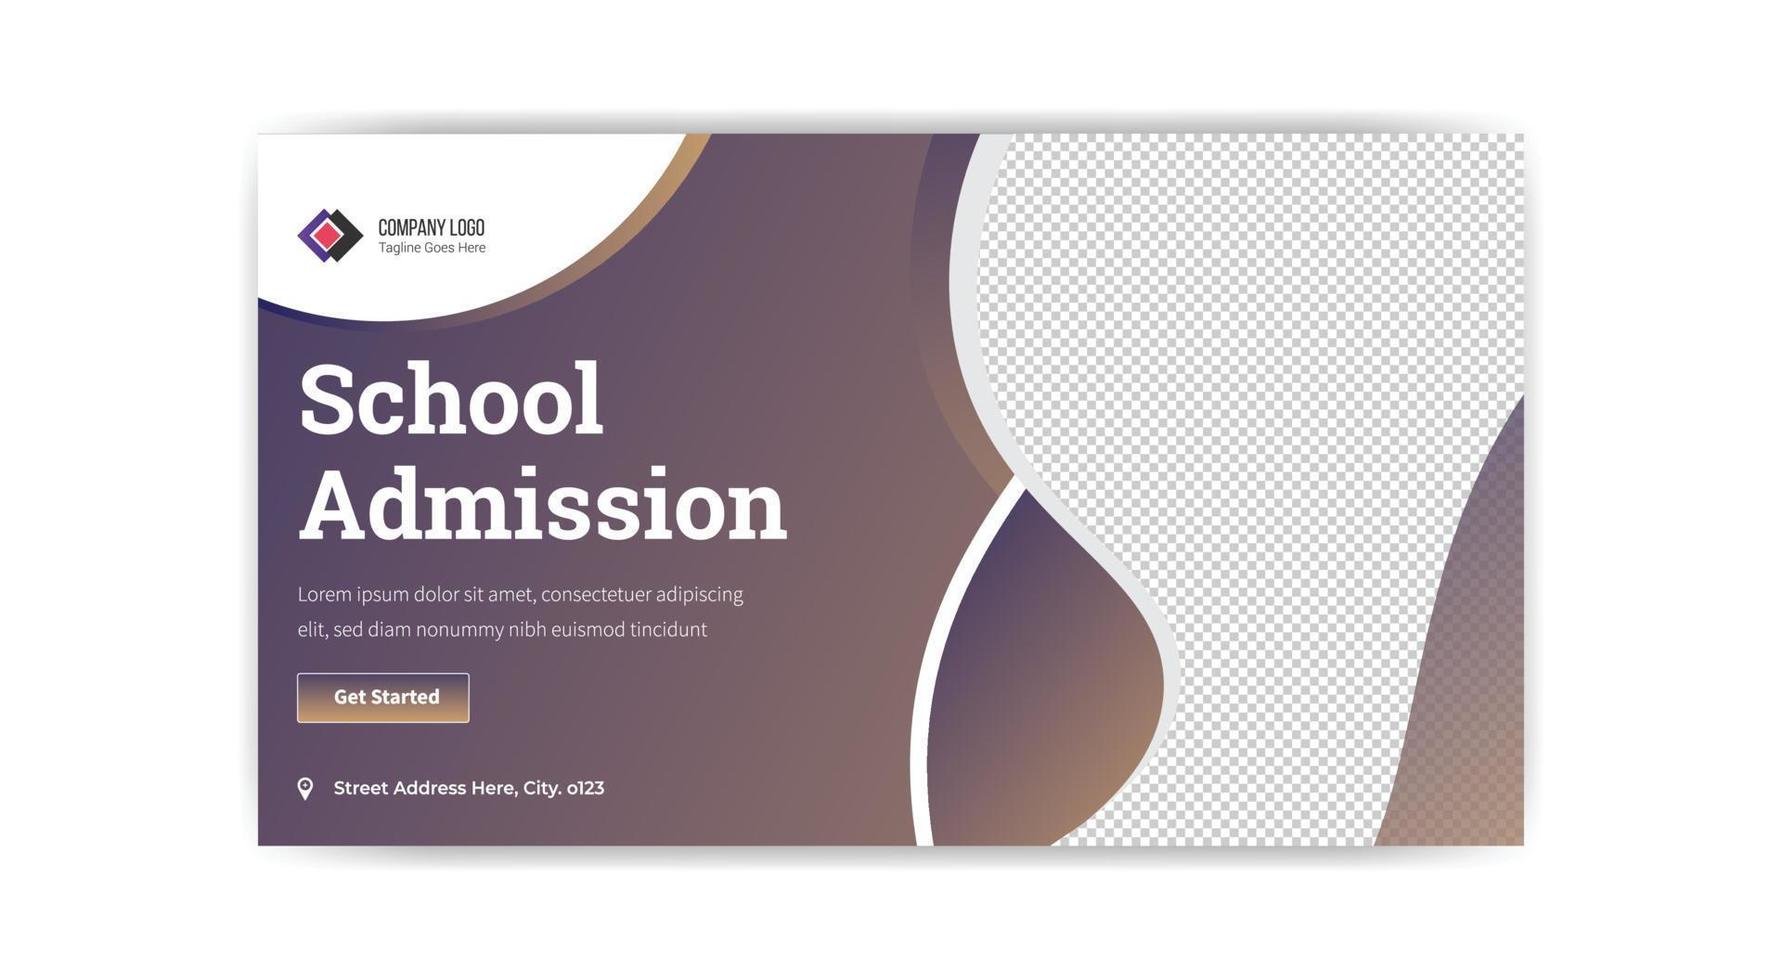 diseño de banner en miniatura de admisión a la escuela vector